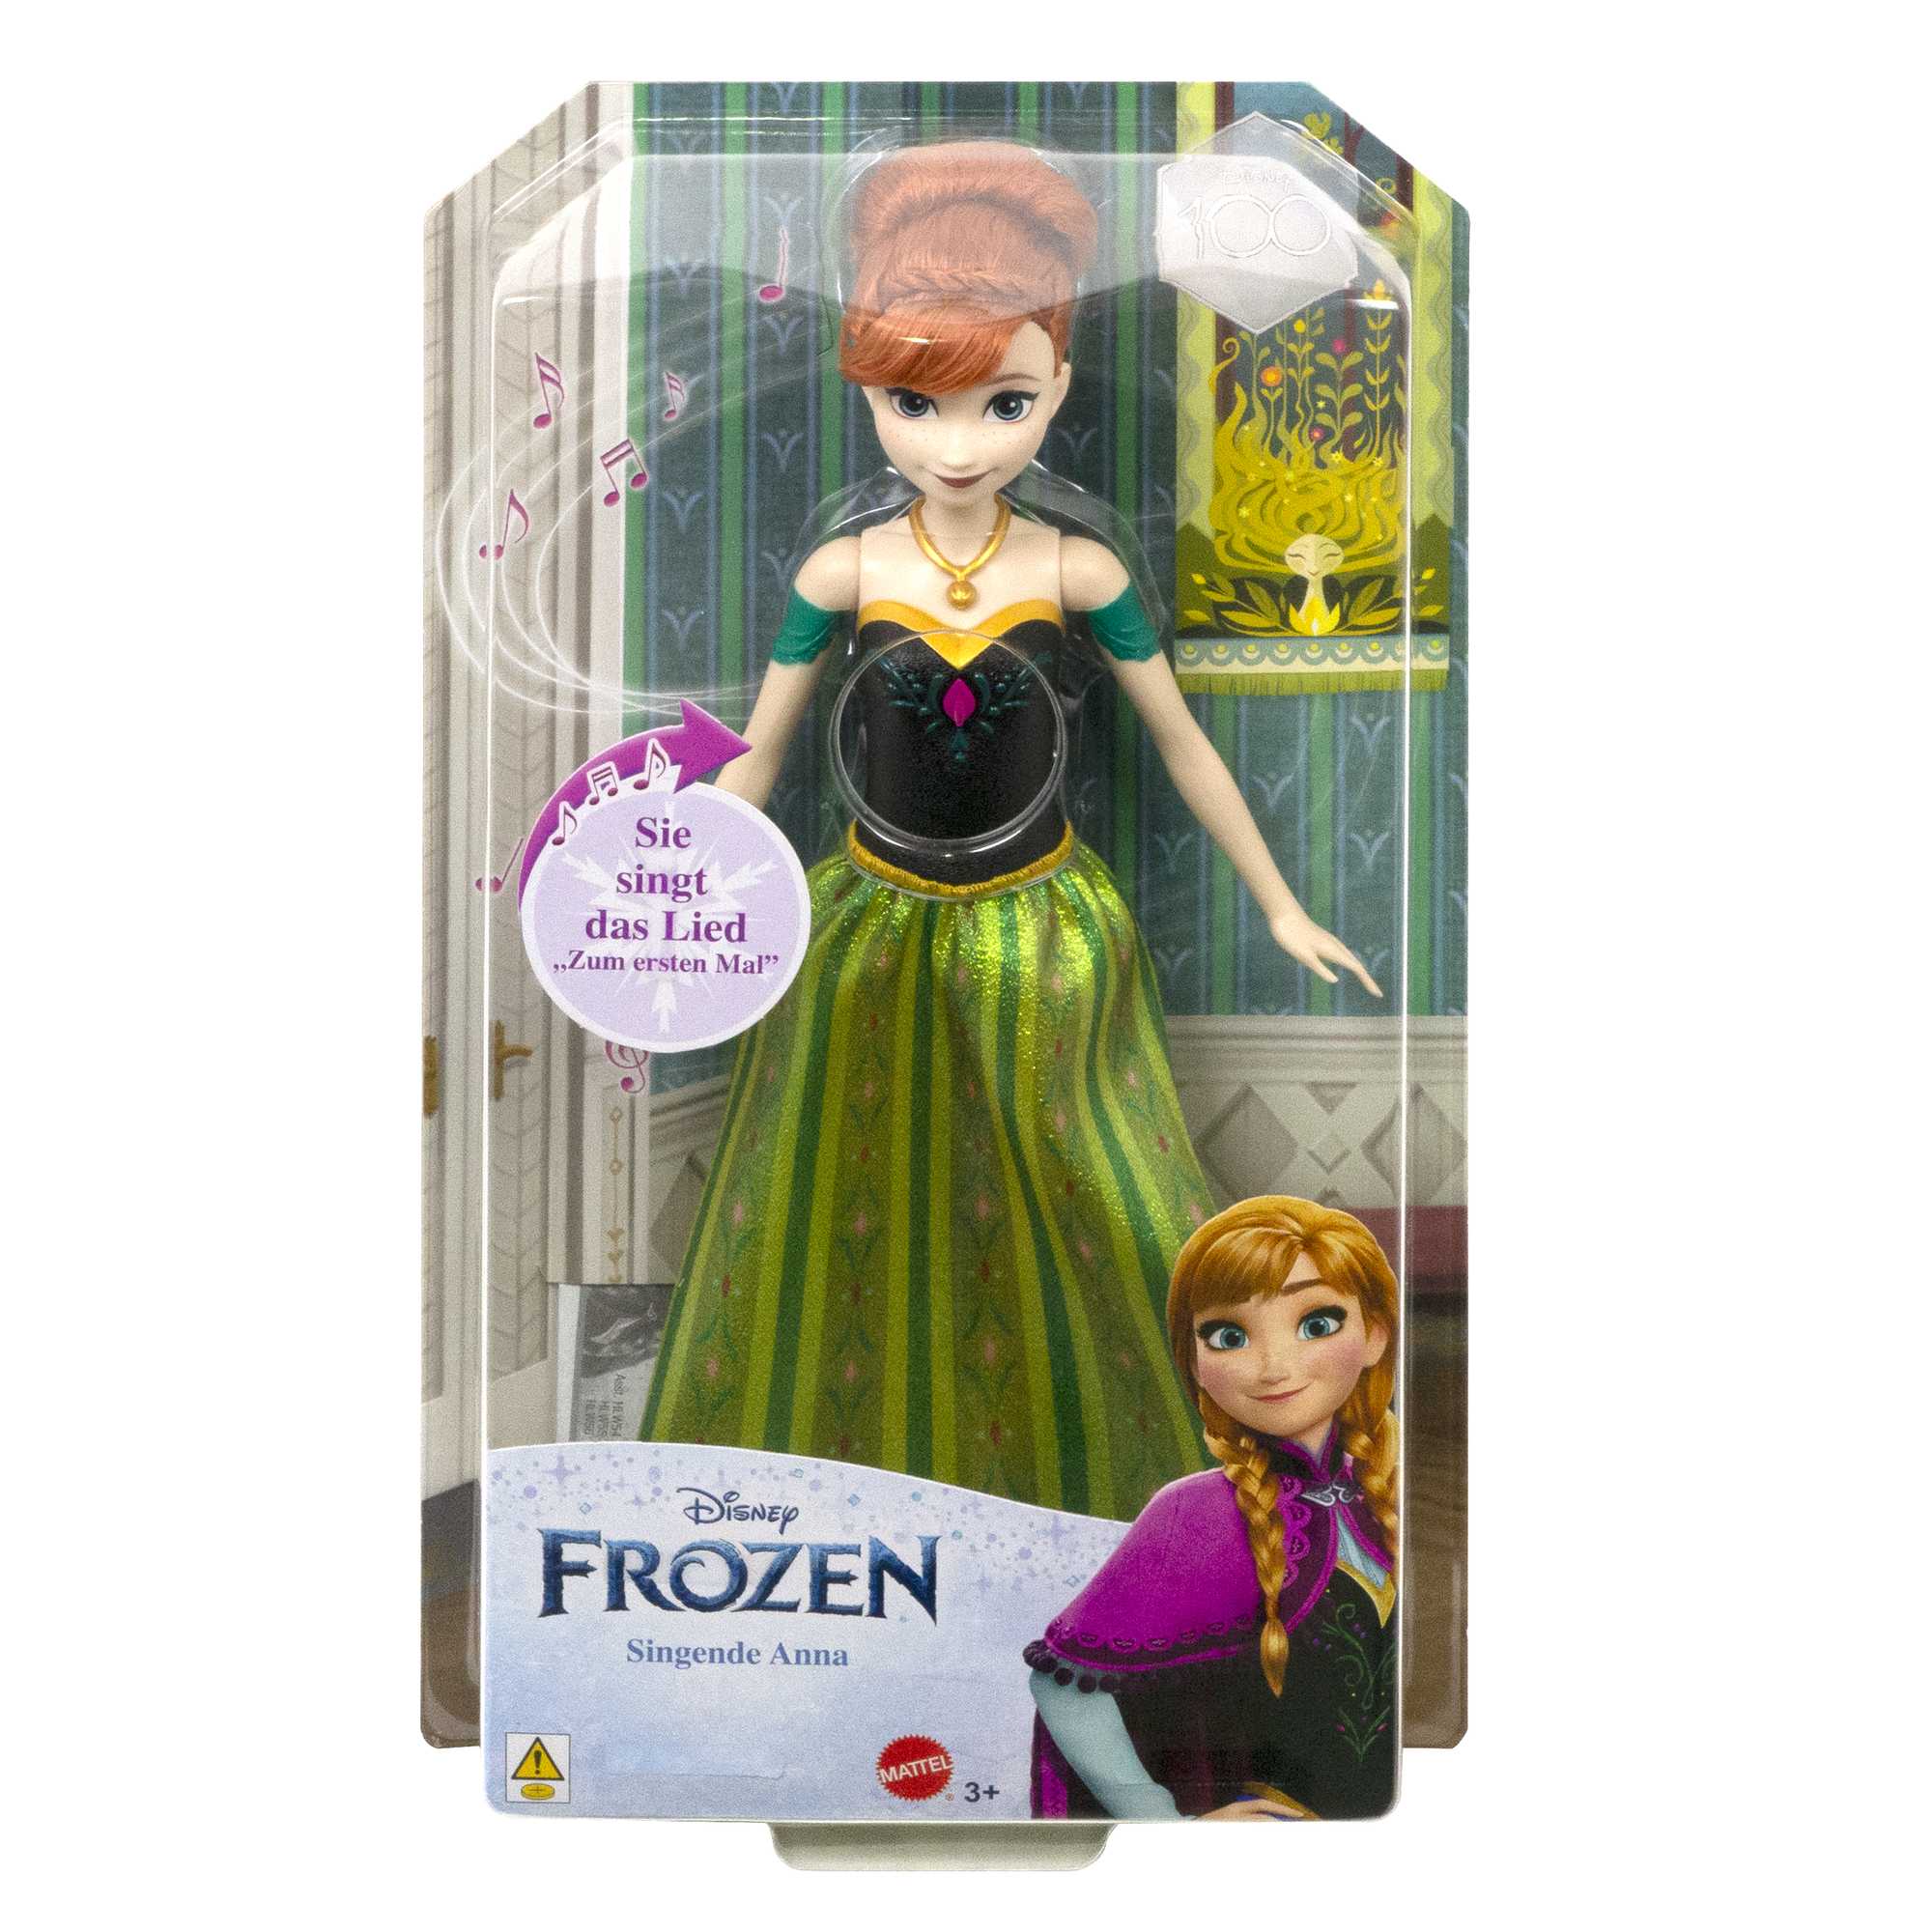 Disneys Die Eiskönigin Anna, singende Puppe (Frozen) HMG41